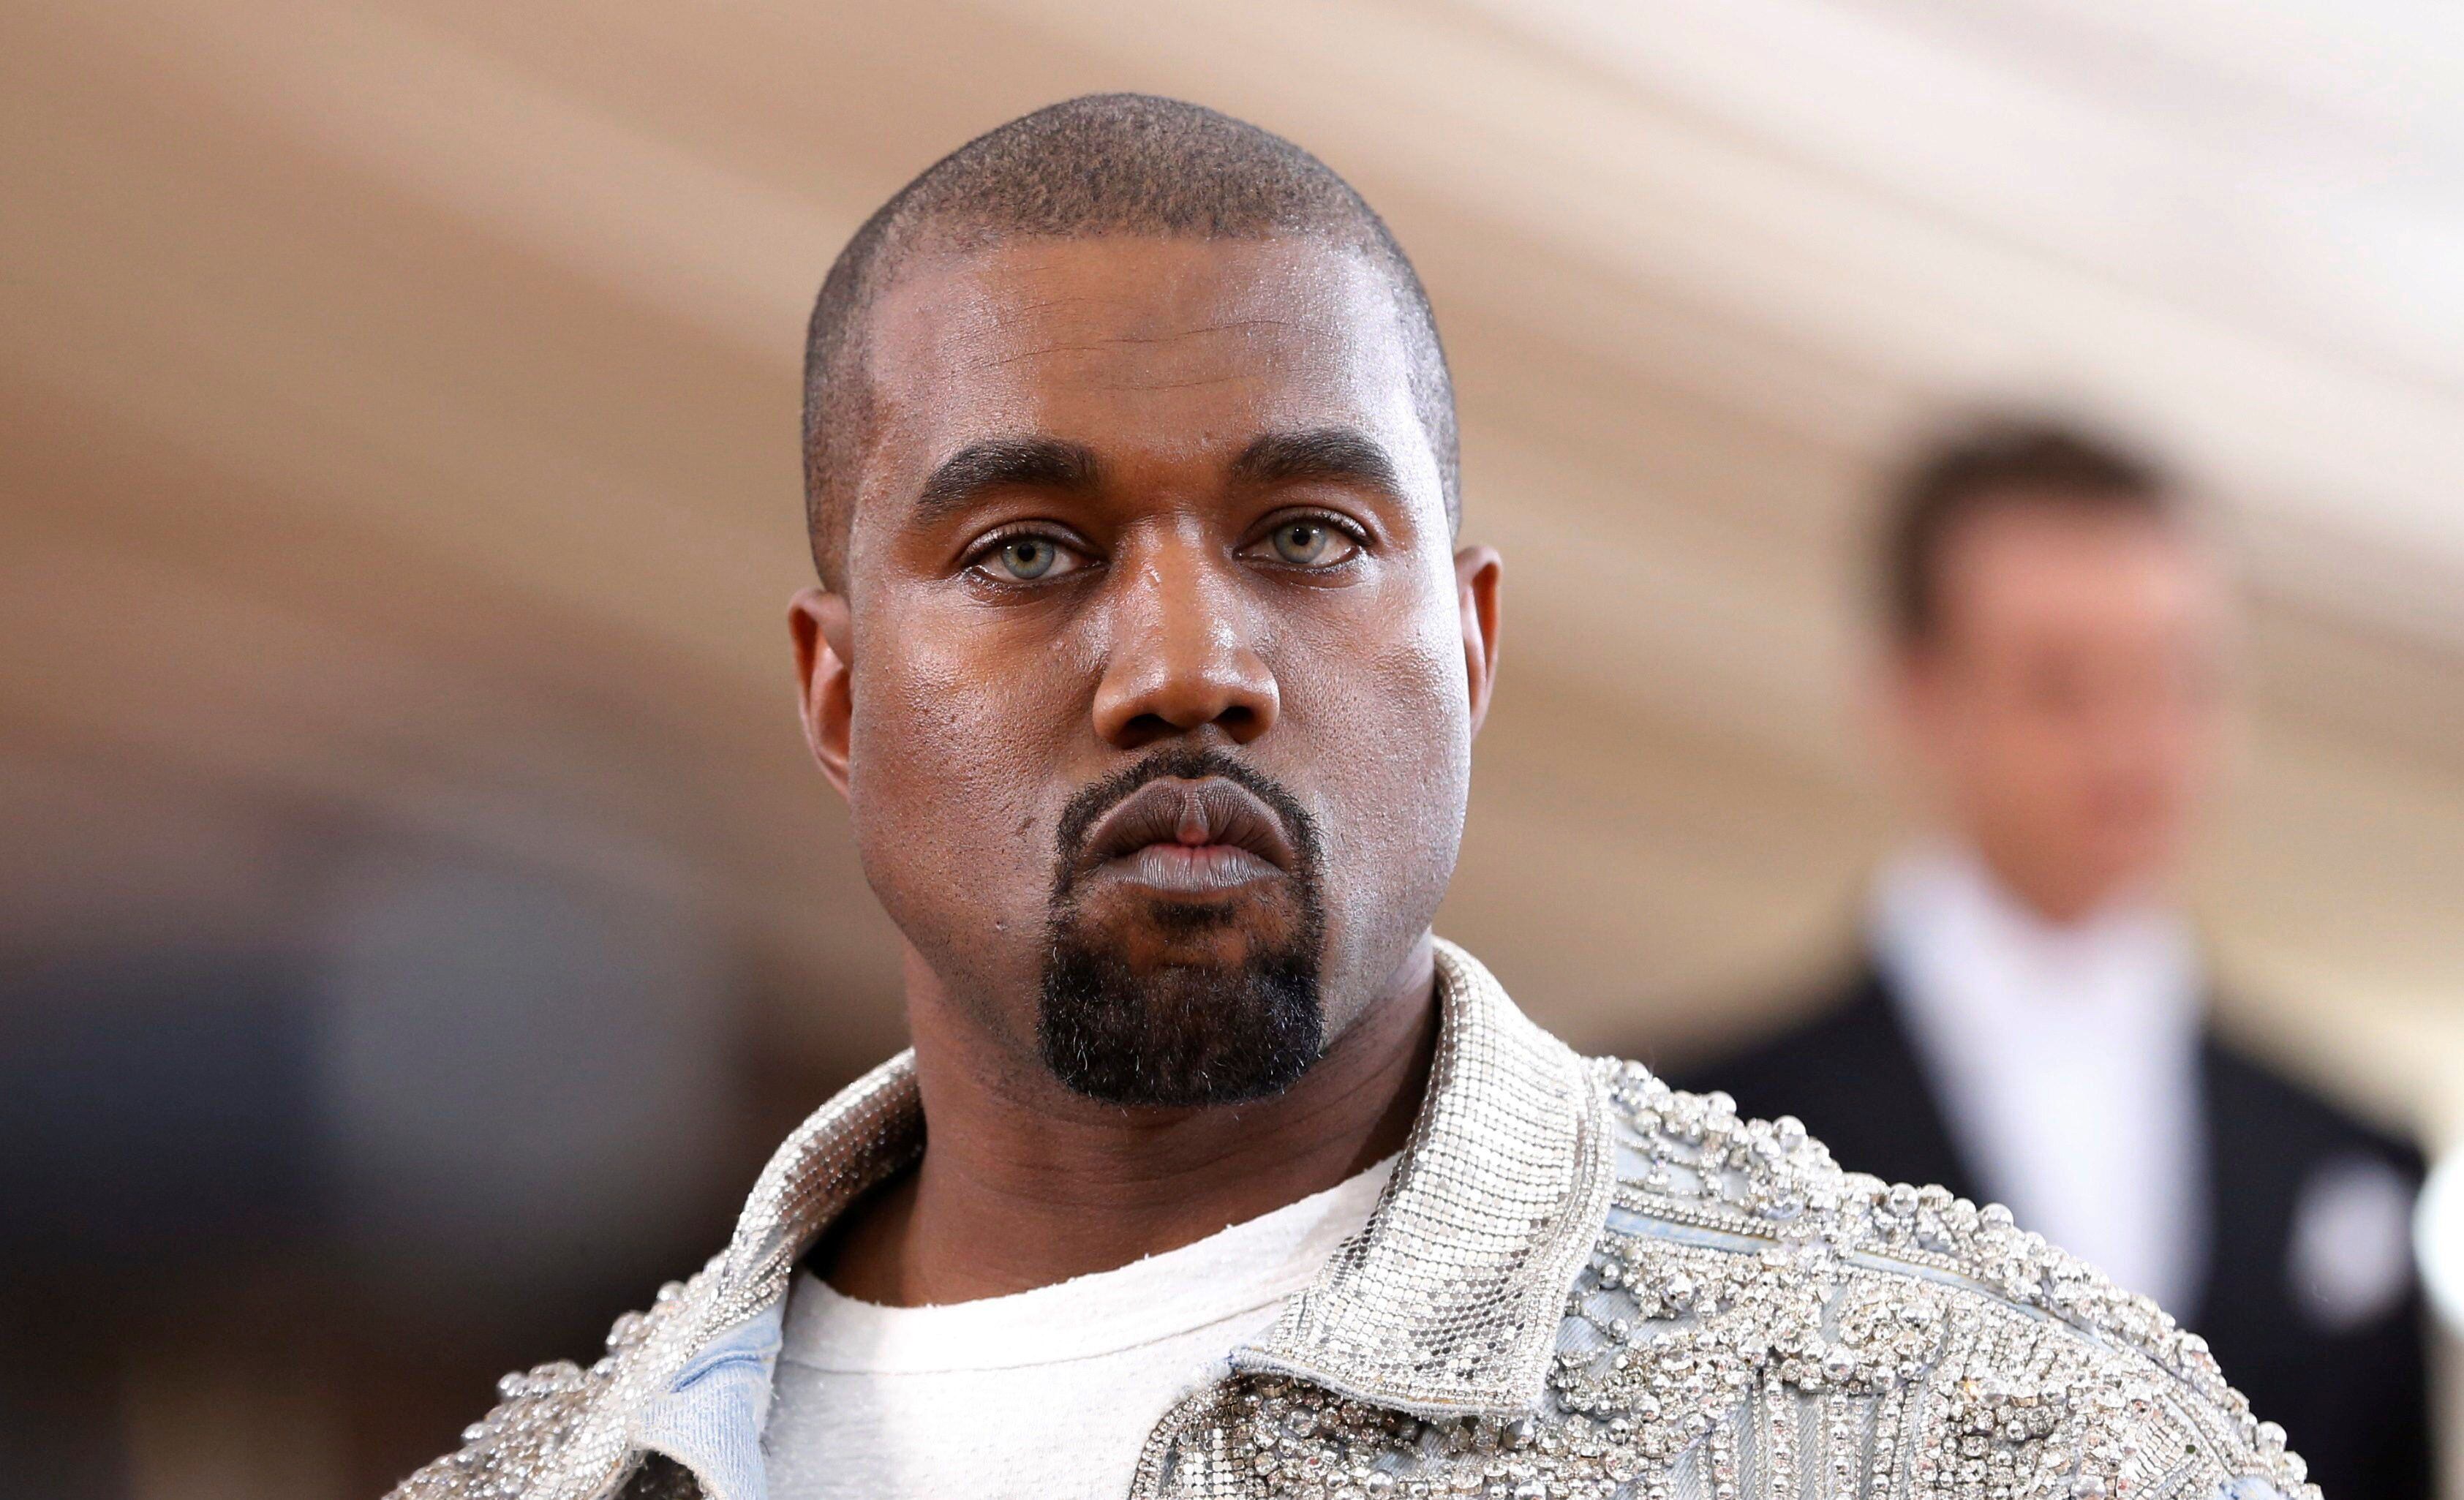 Após discurso polêmico, Kanye West pode encontrar refúgio ou dinheiro na  música? - Estadão